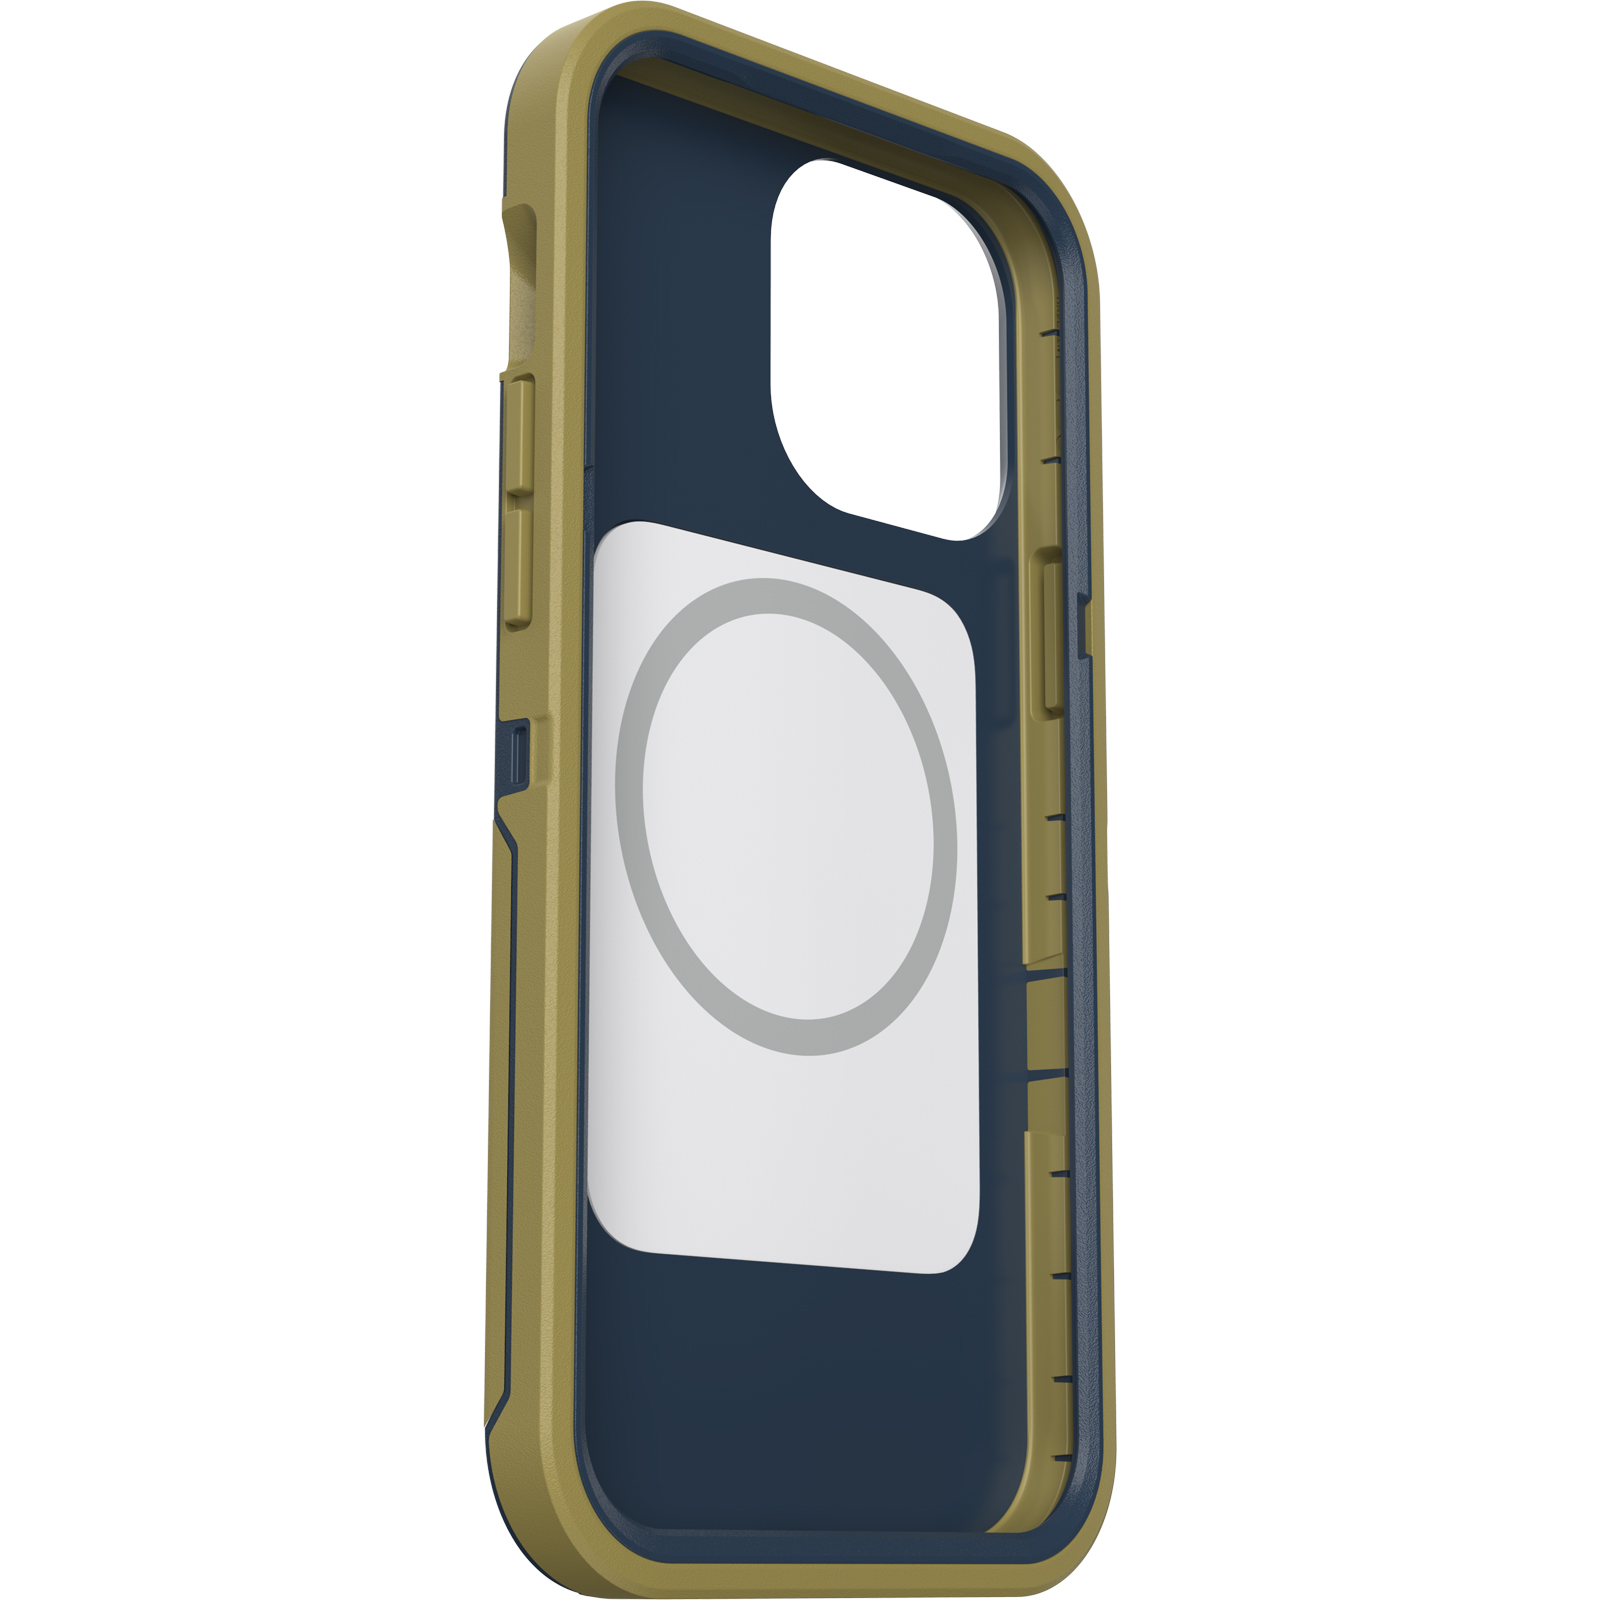 เคส OtterBox รุ่น Defender XT - iPhone 13 Pro Max - Dark Mineral